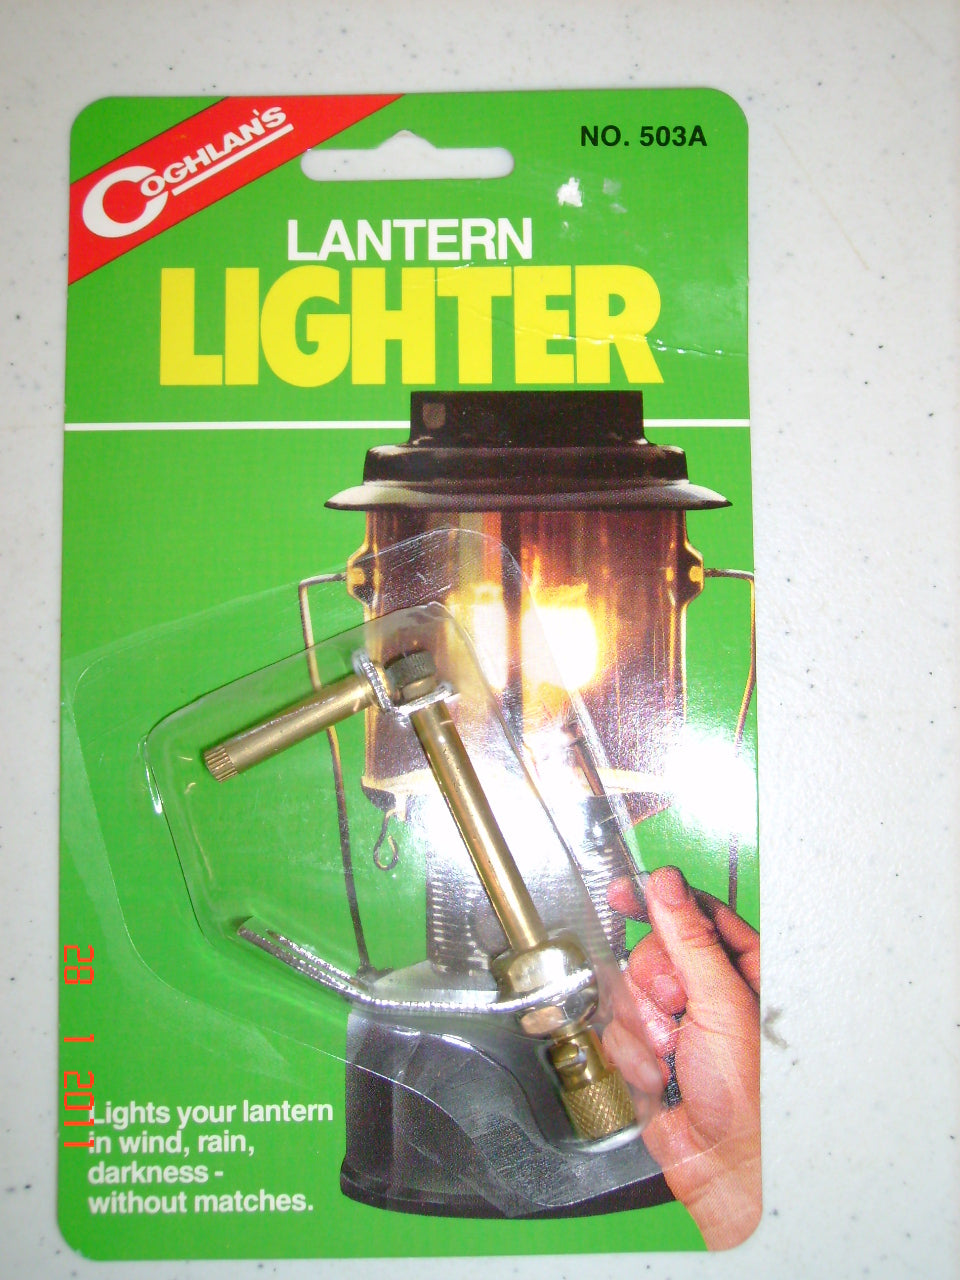 Coghlan Lantern Lighter